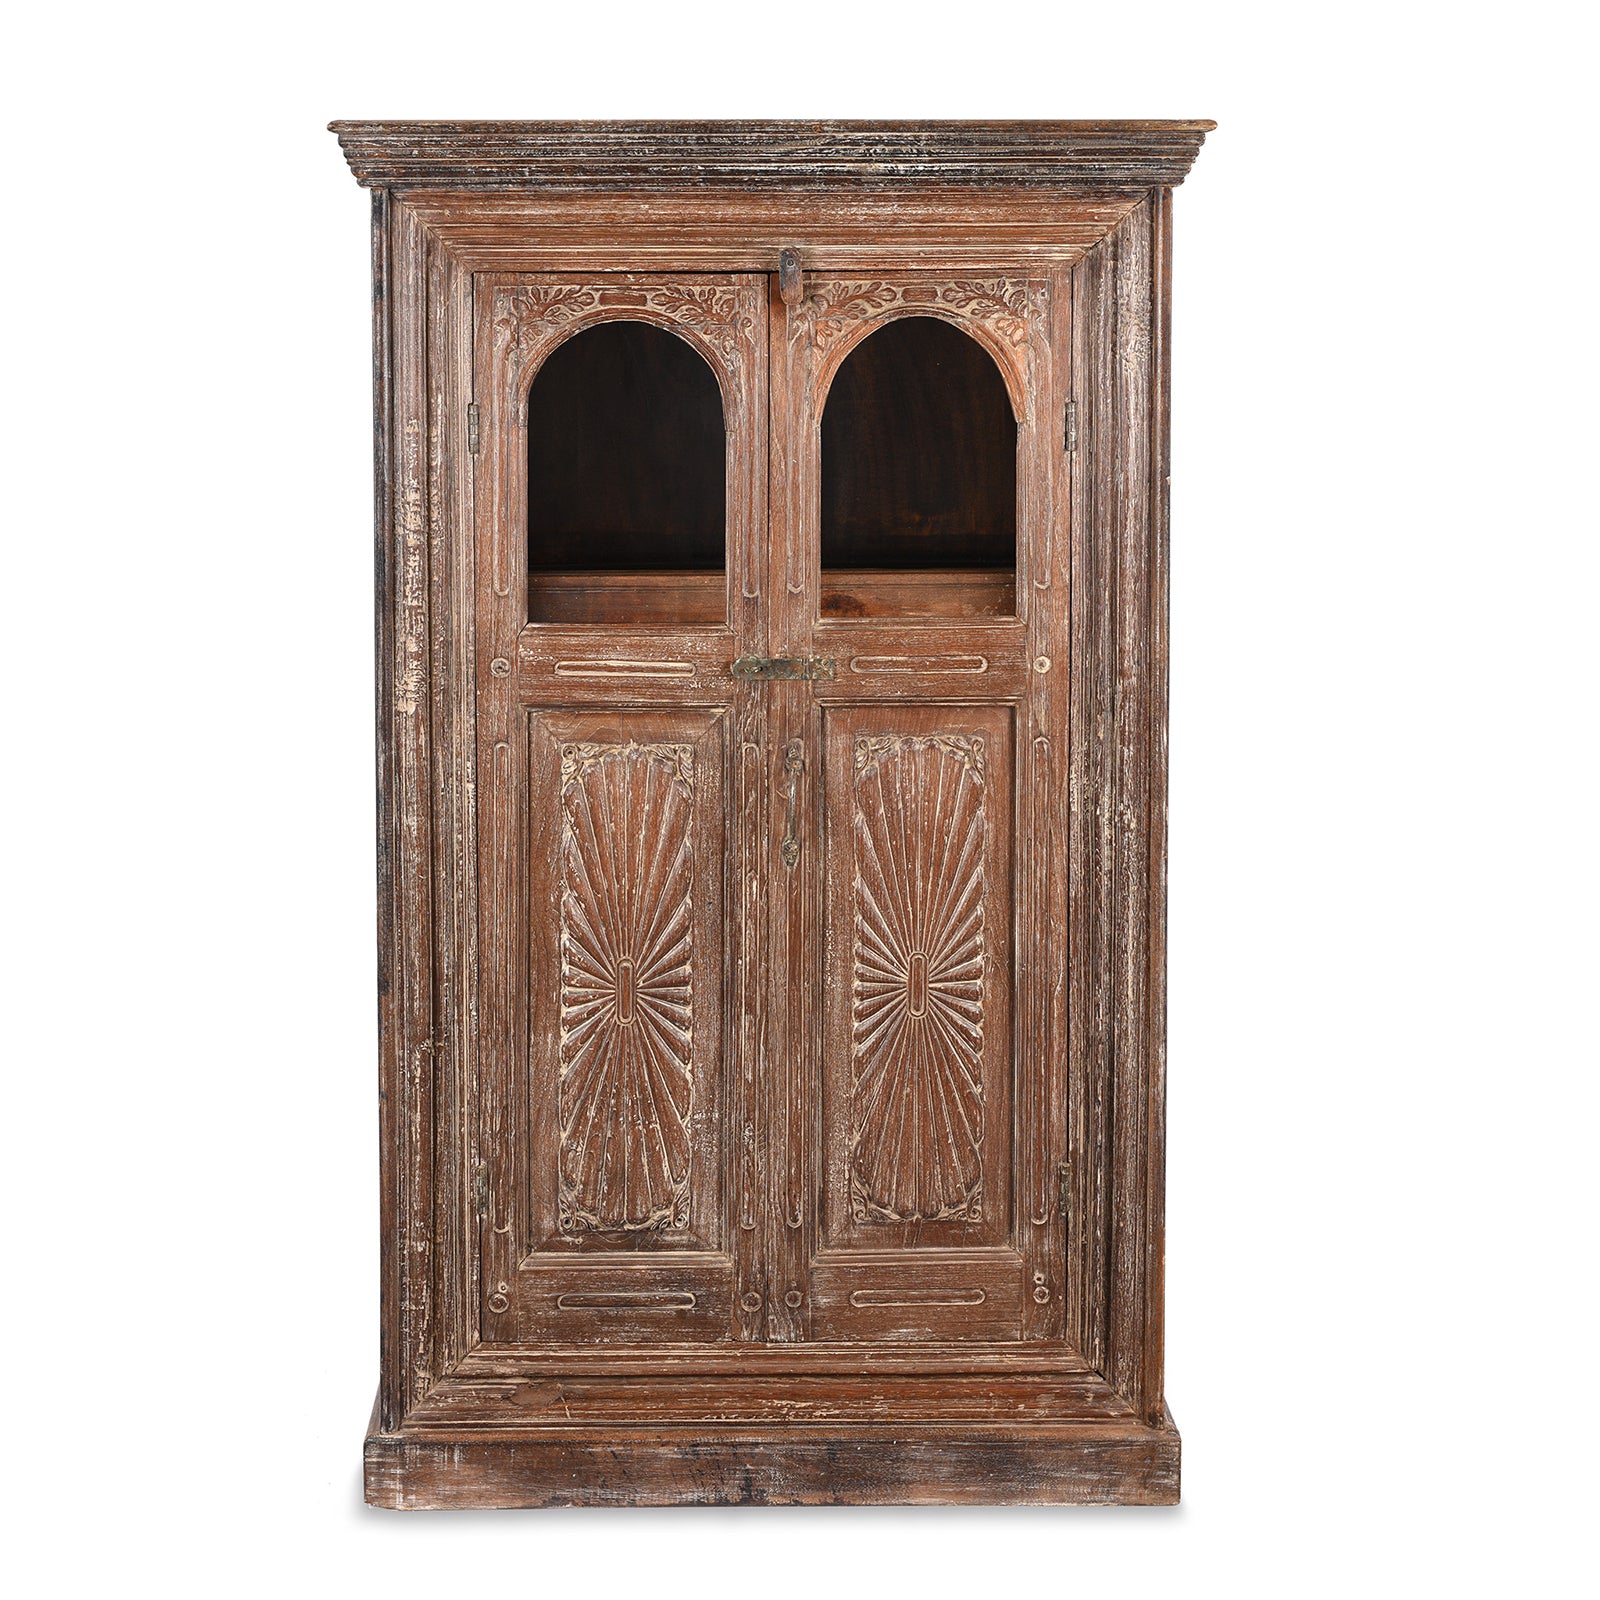 Antique Teak Almirah Cabinet With Sunburst Panels | Indigo Antiques